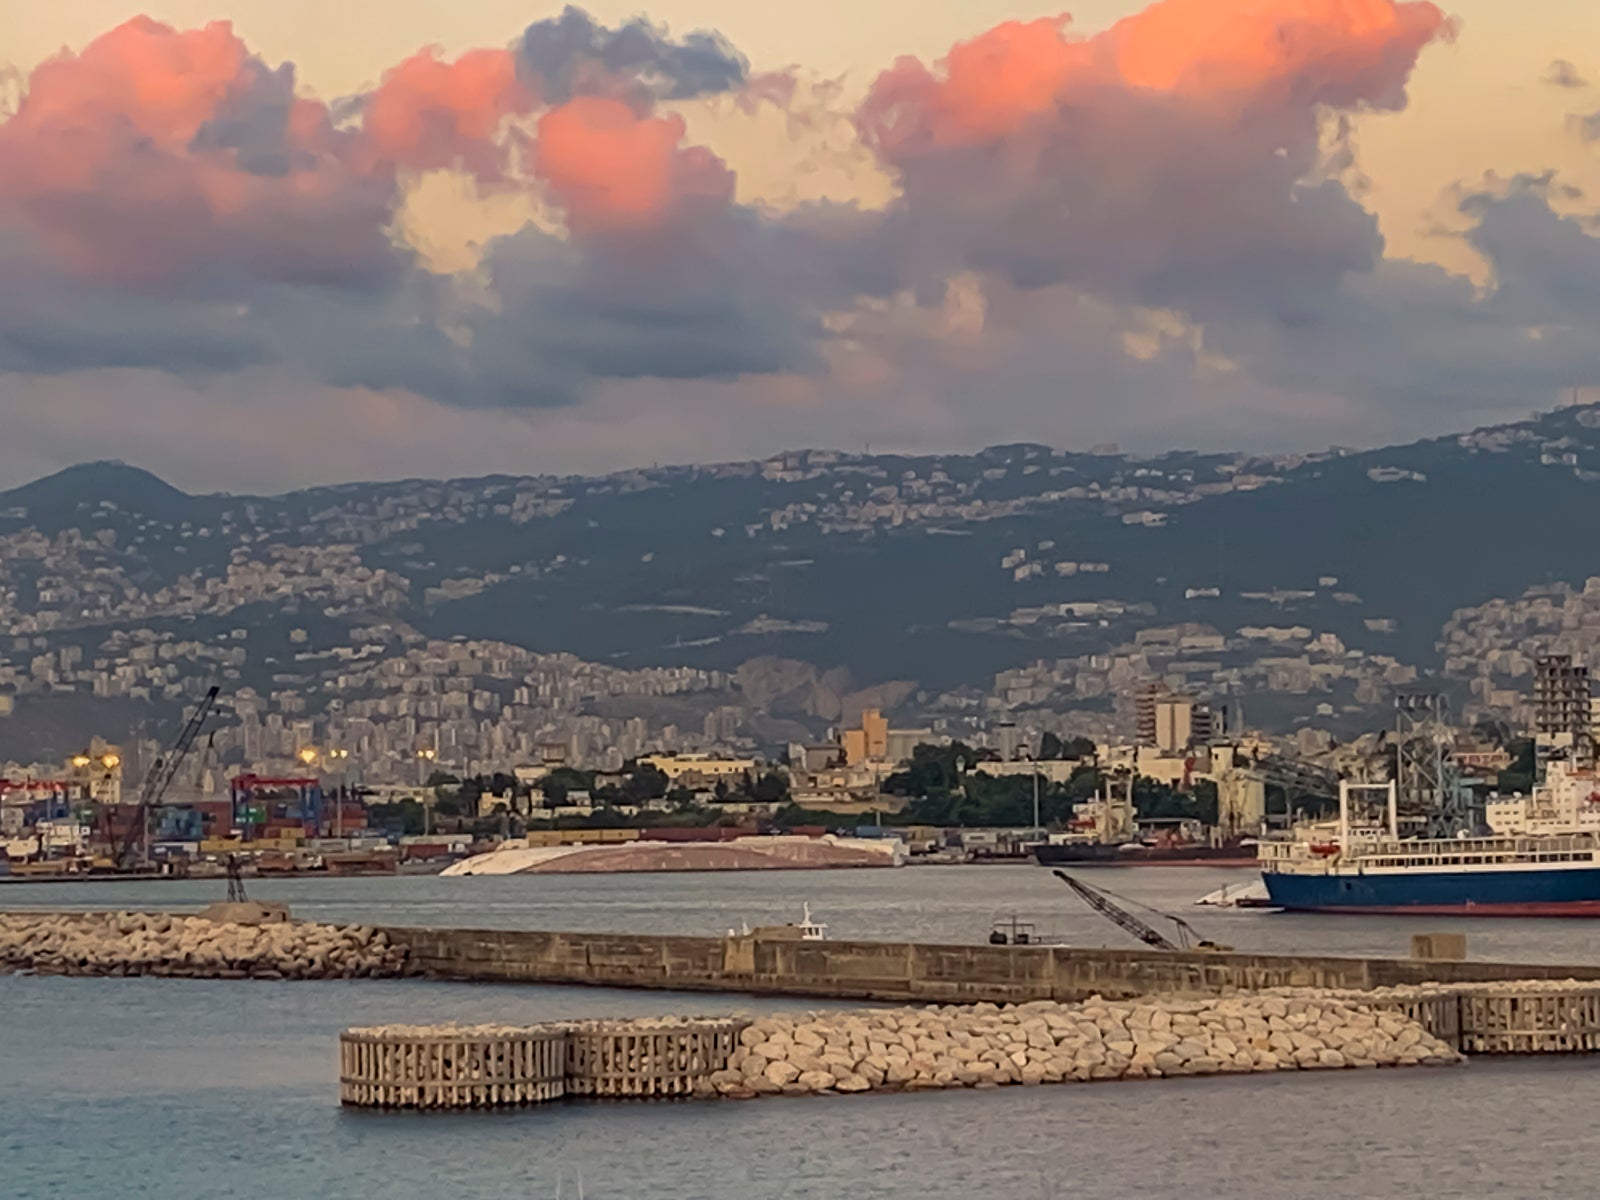 Una foto del paisaje del puerto de Beirut